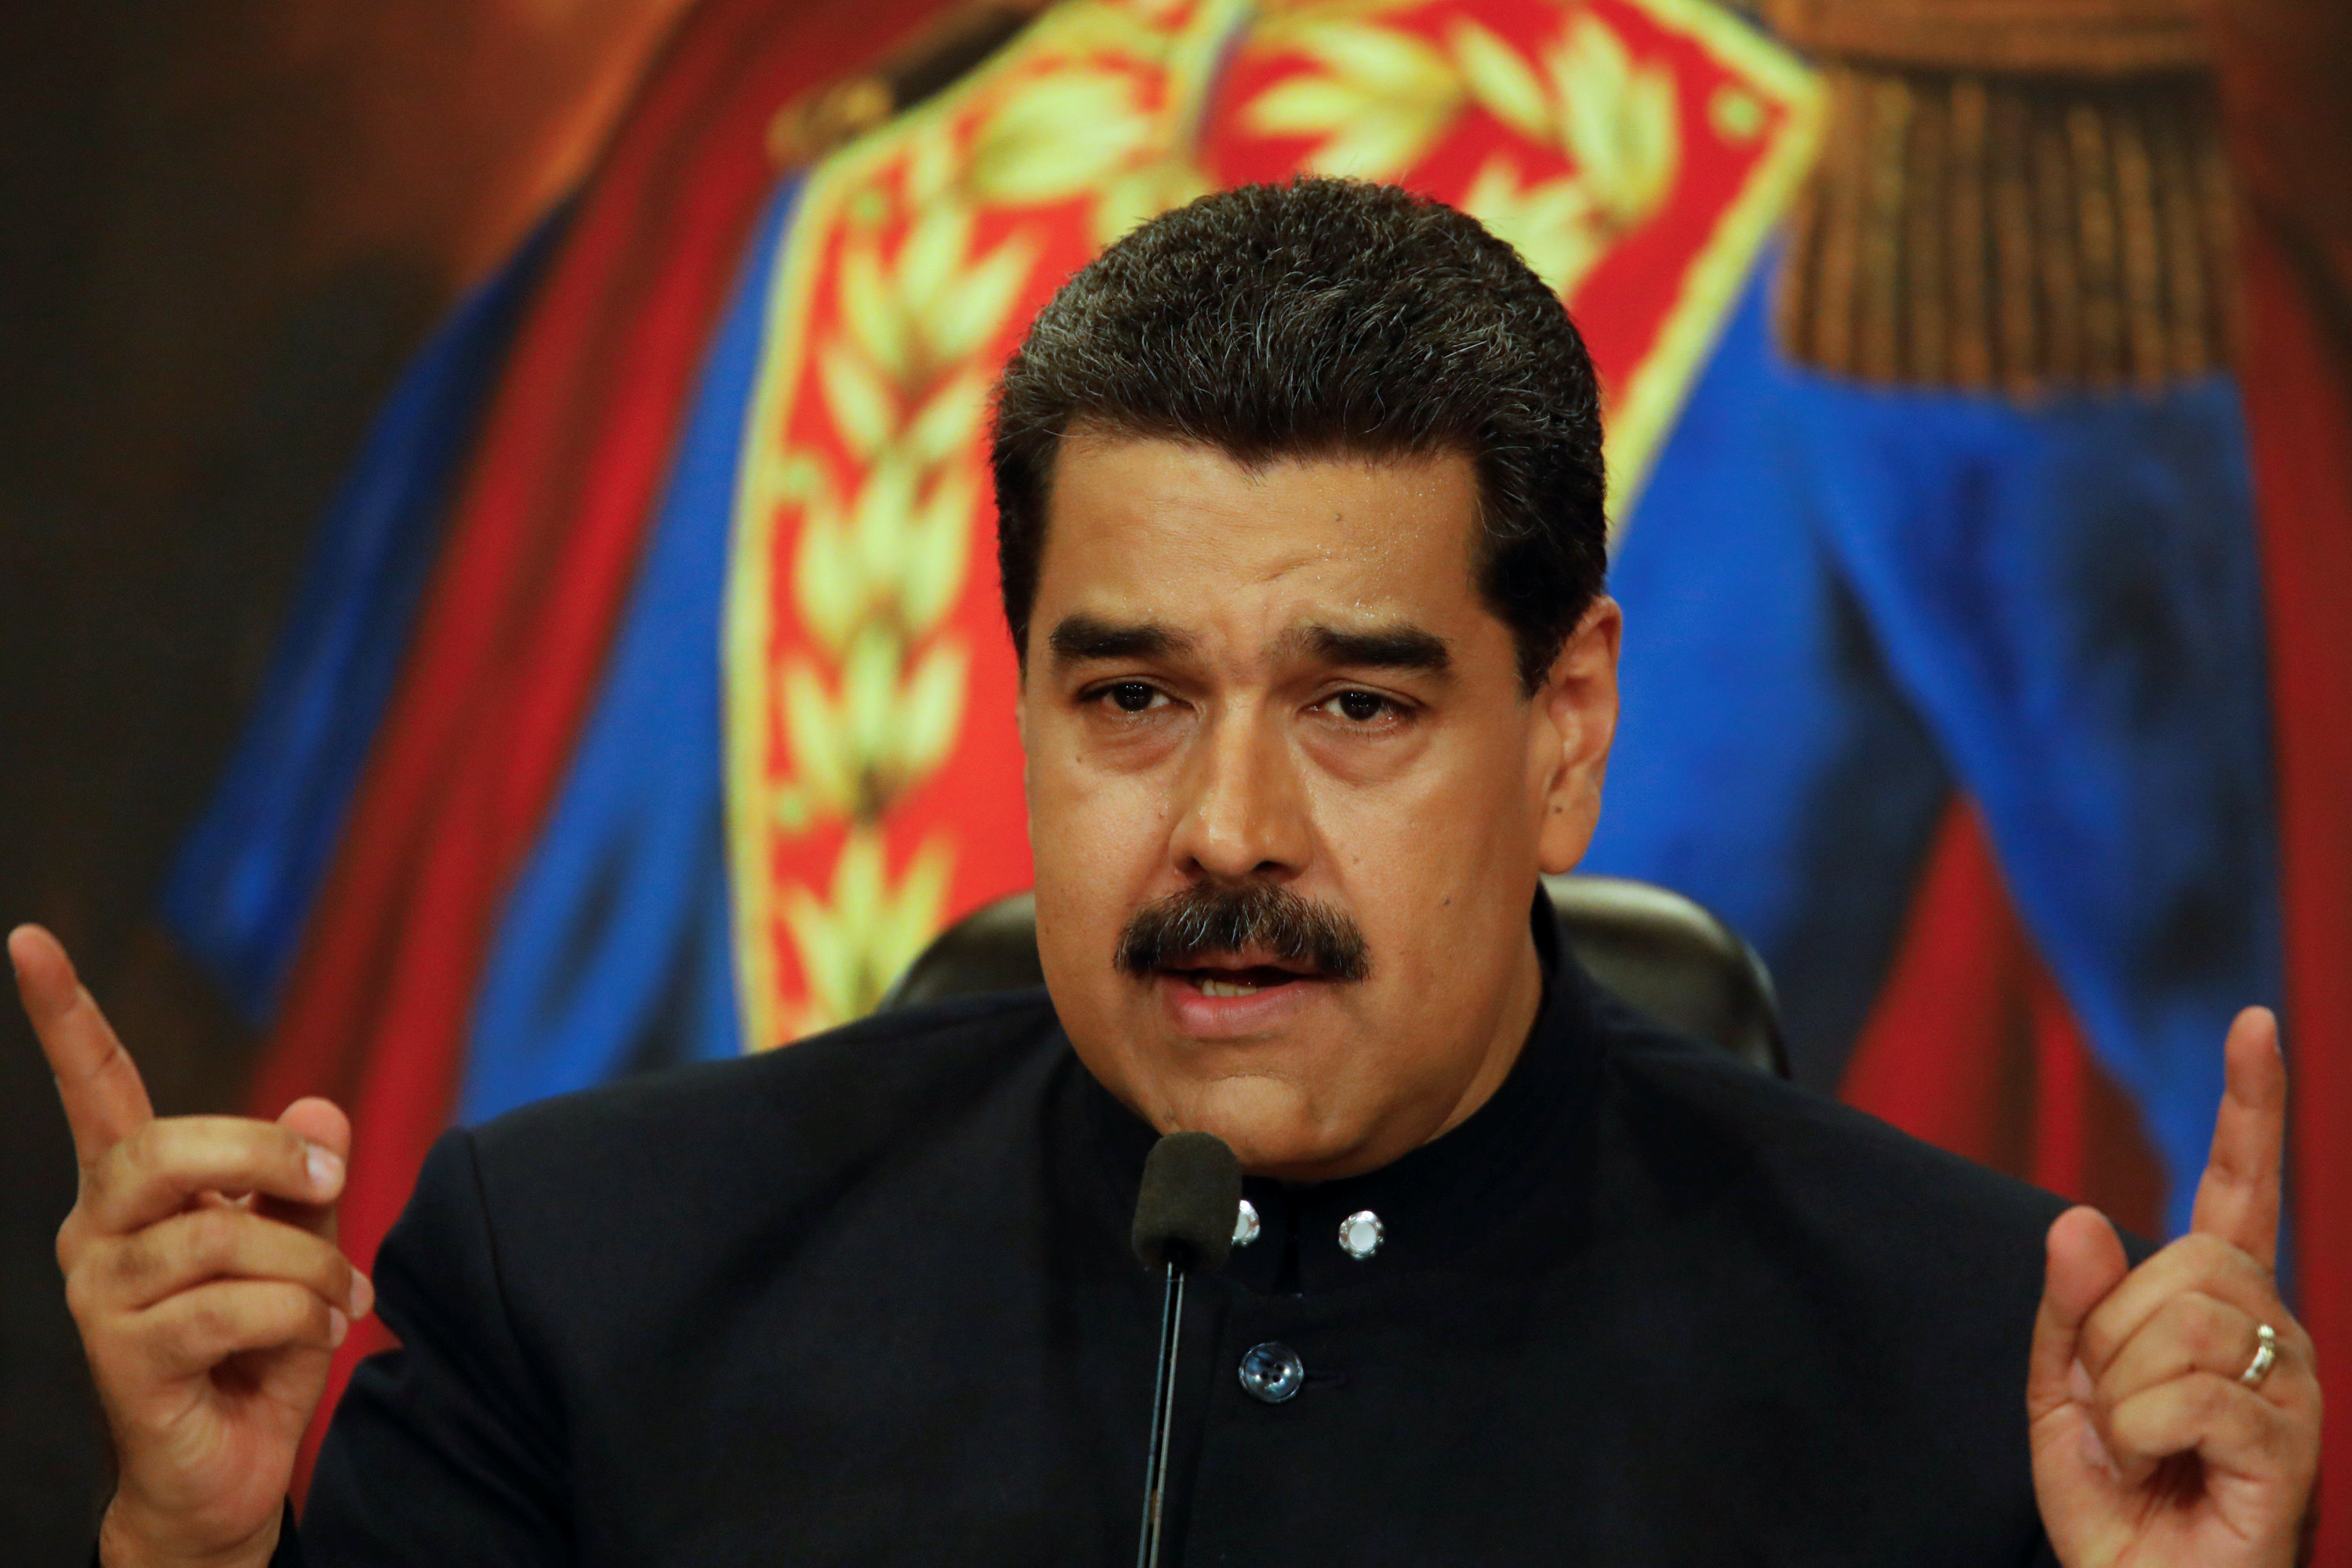 Estados Unidos condena que Maduro exija subordinación gobernadores opositores